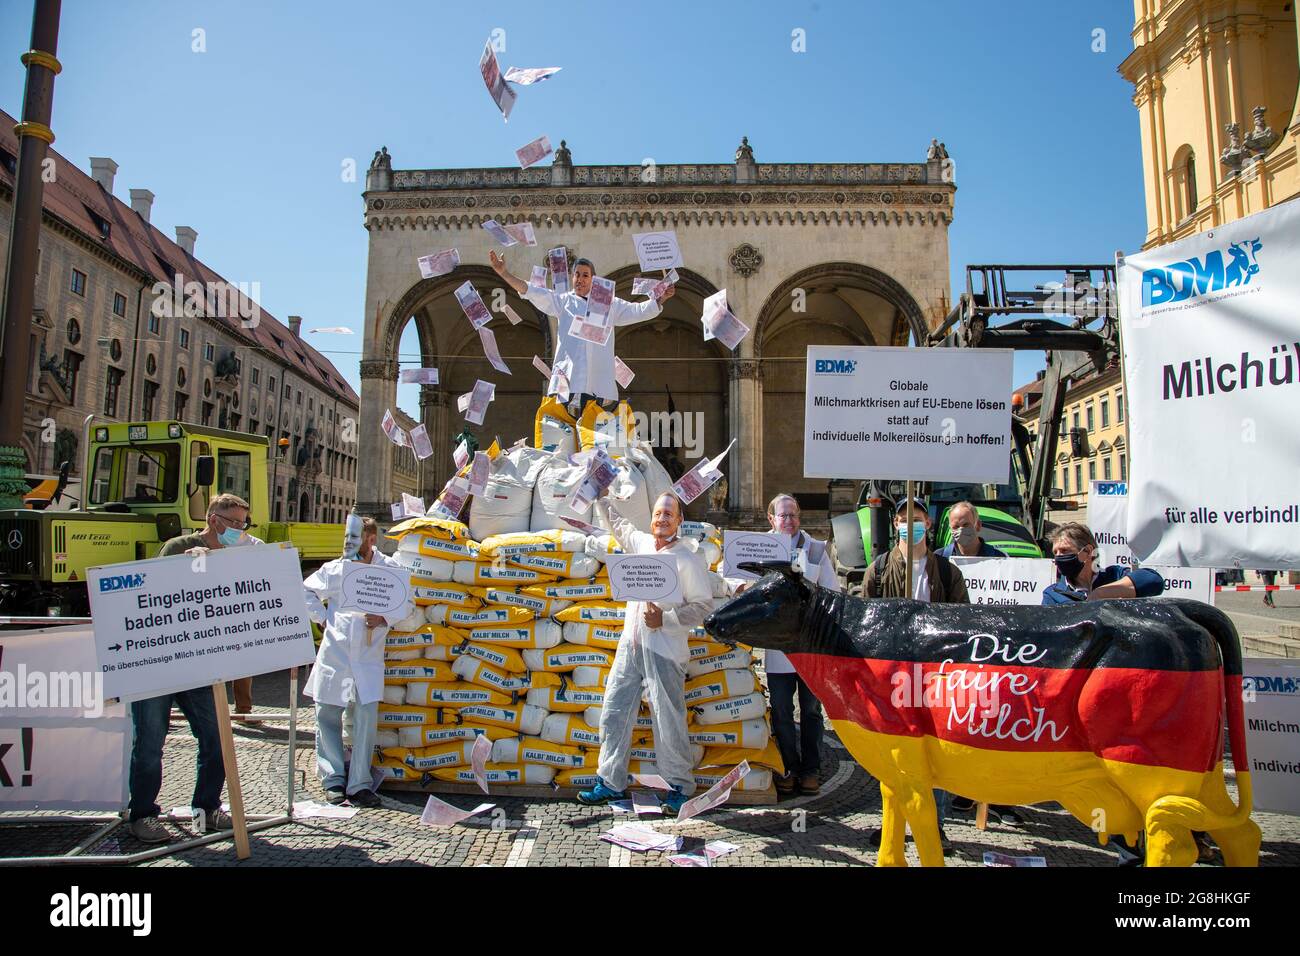 Demonstrant voller Geld, der die Macht der Milch Konzerne symbolisiert mit einem sarkastischen Schild: ' Billige Milch abholen & mit staatlichen Zuschuss einlagern. Für uns Win-Win! ' und wirft mit Geld um sich. Er steht auf 300 Säcke mit Milchpulver und Demonstranten mit Schilder und einer Milchkuh in Deutschlandfarben 'Die faire Milch'. Am 18. Mai 2020 haben zahlreiche Milchbauern für einen Milchpreis von mindest 40 Cent demonstriert. Durch die Corona Krise ist Milchpreis global deutlich gefallen und der BDM fordert einen staatlichen Eingriff. München, 18. Mai 2020. (Photo by Alexander Pohl/ Stock Photo